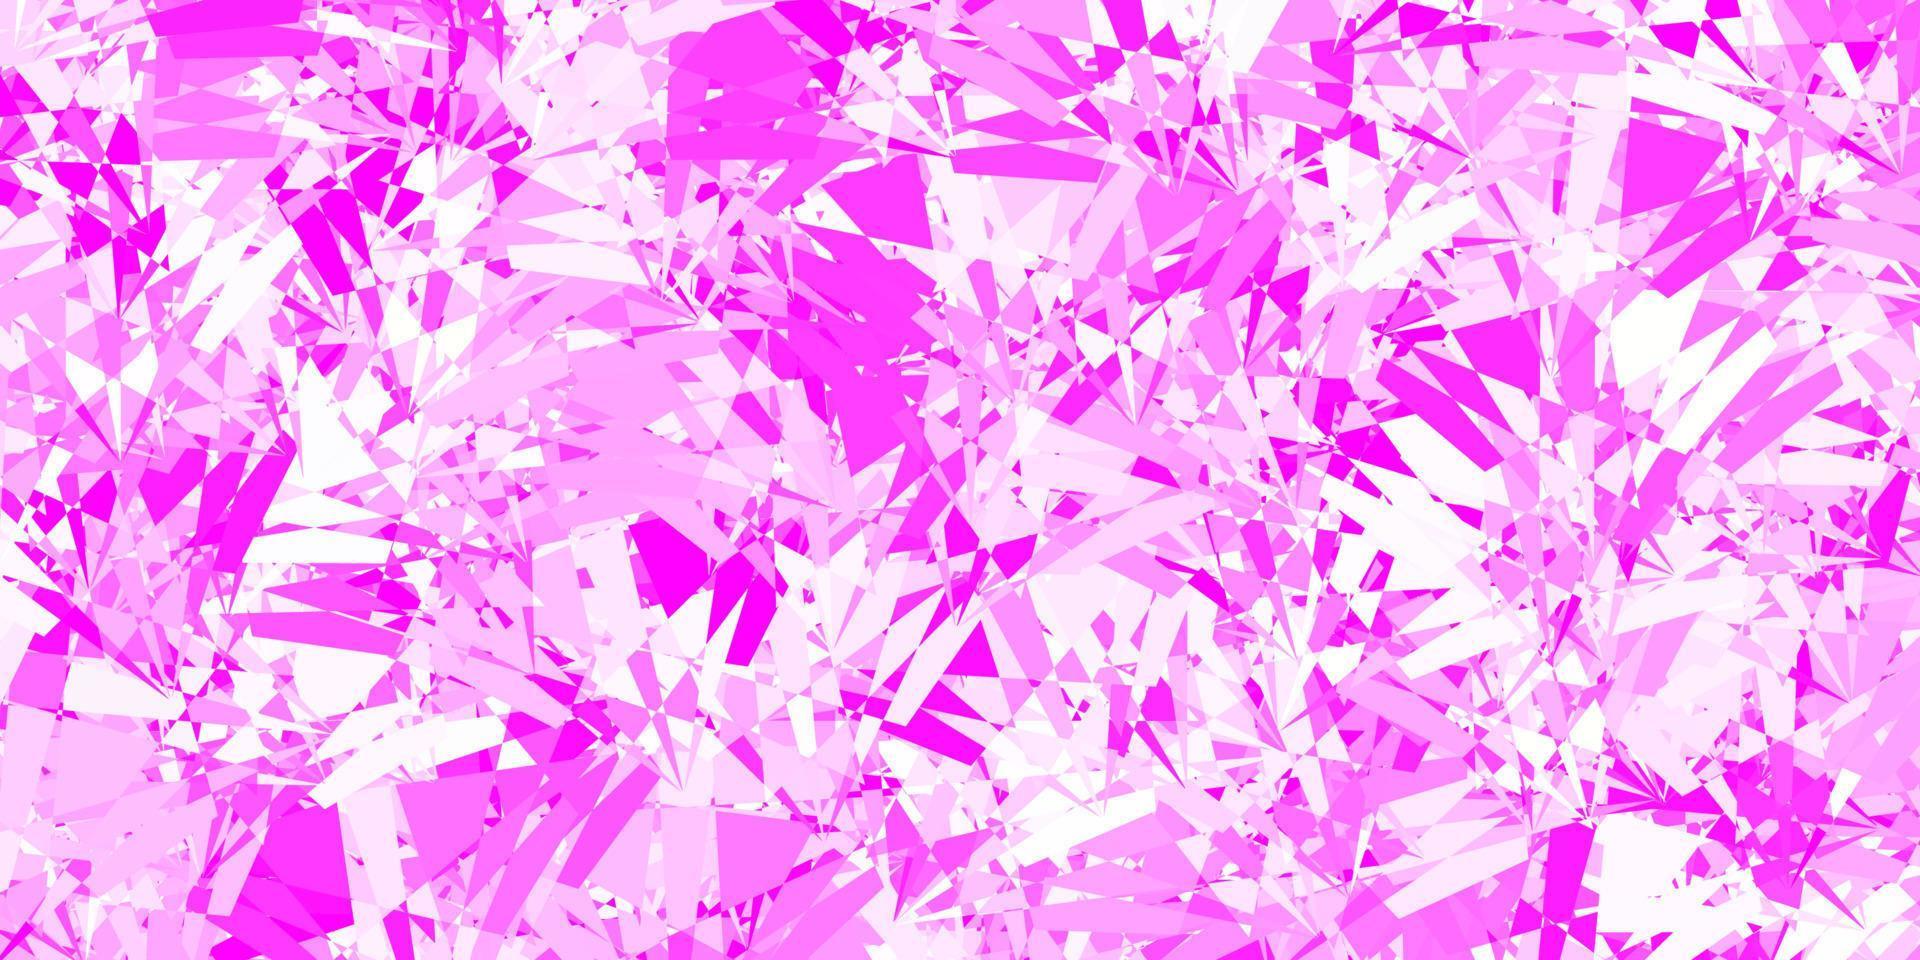 pano de fundo vector rosa claro com triângulos, linhas.